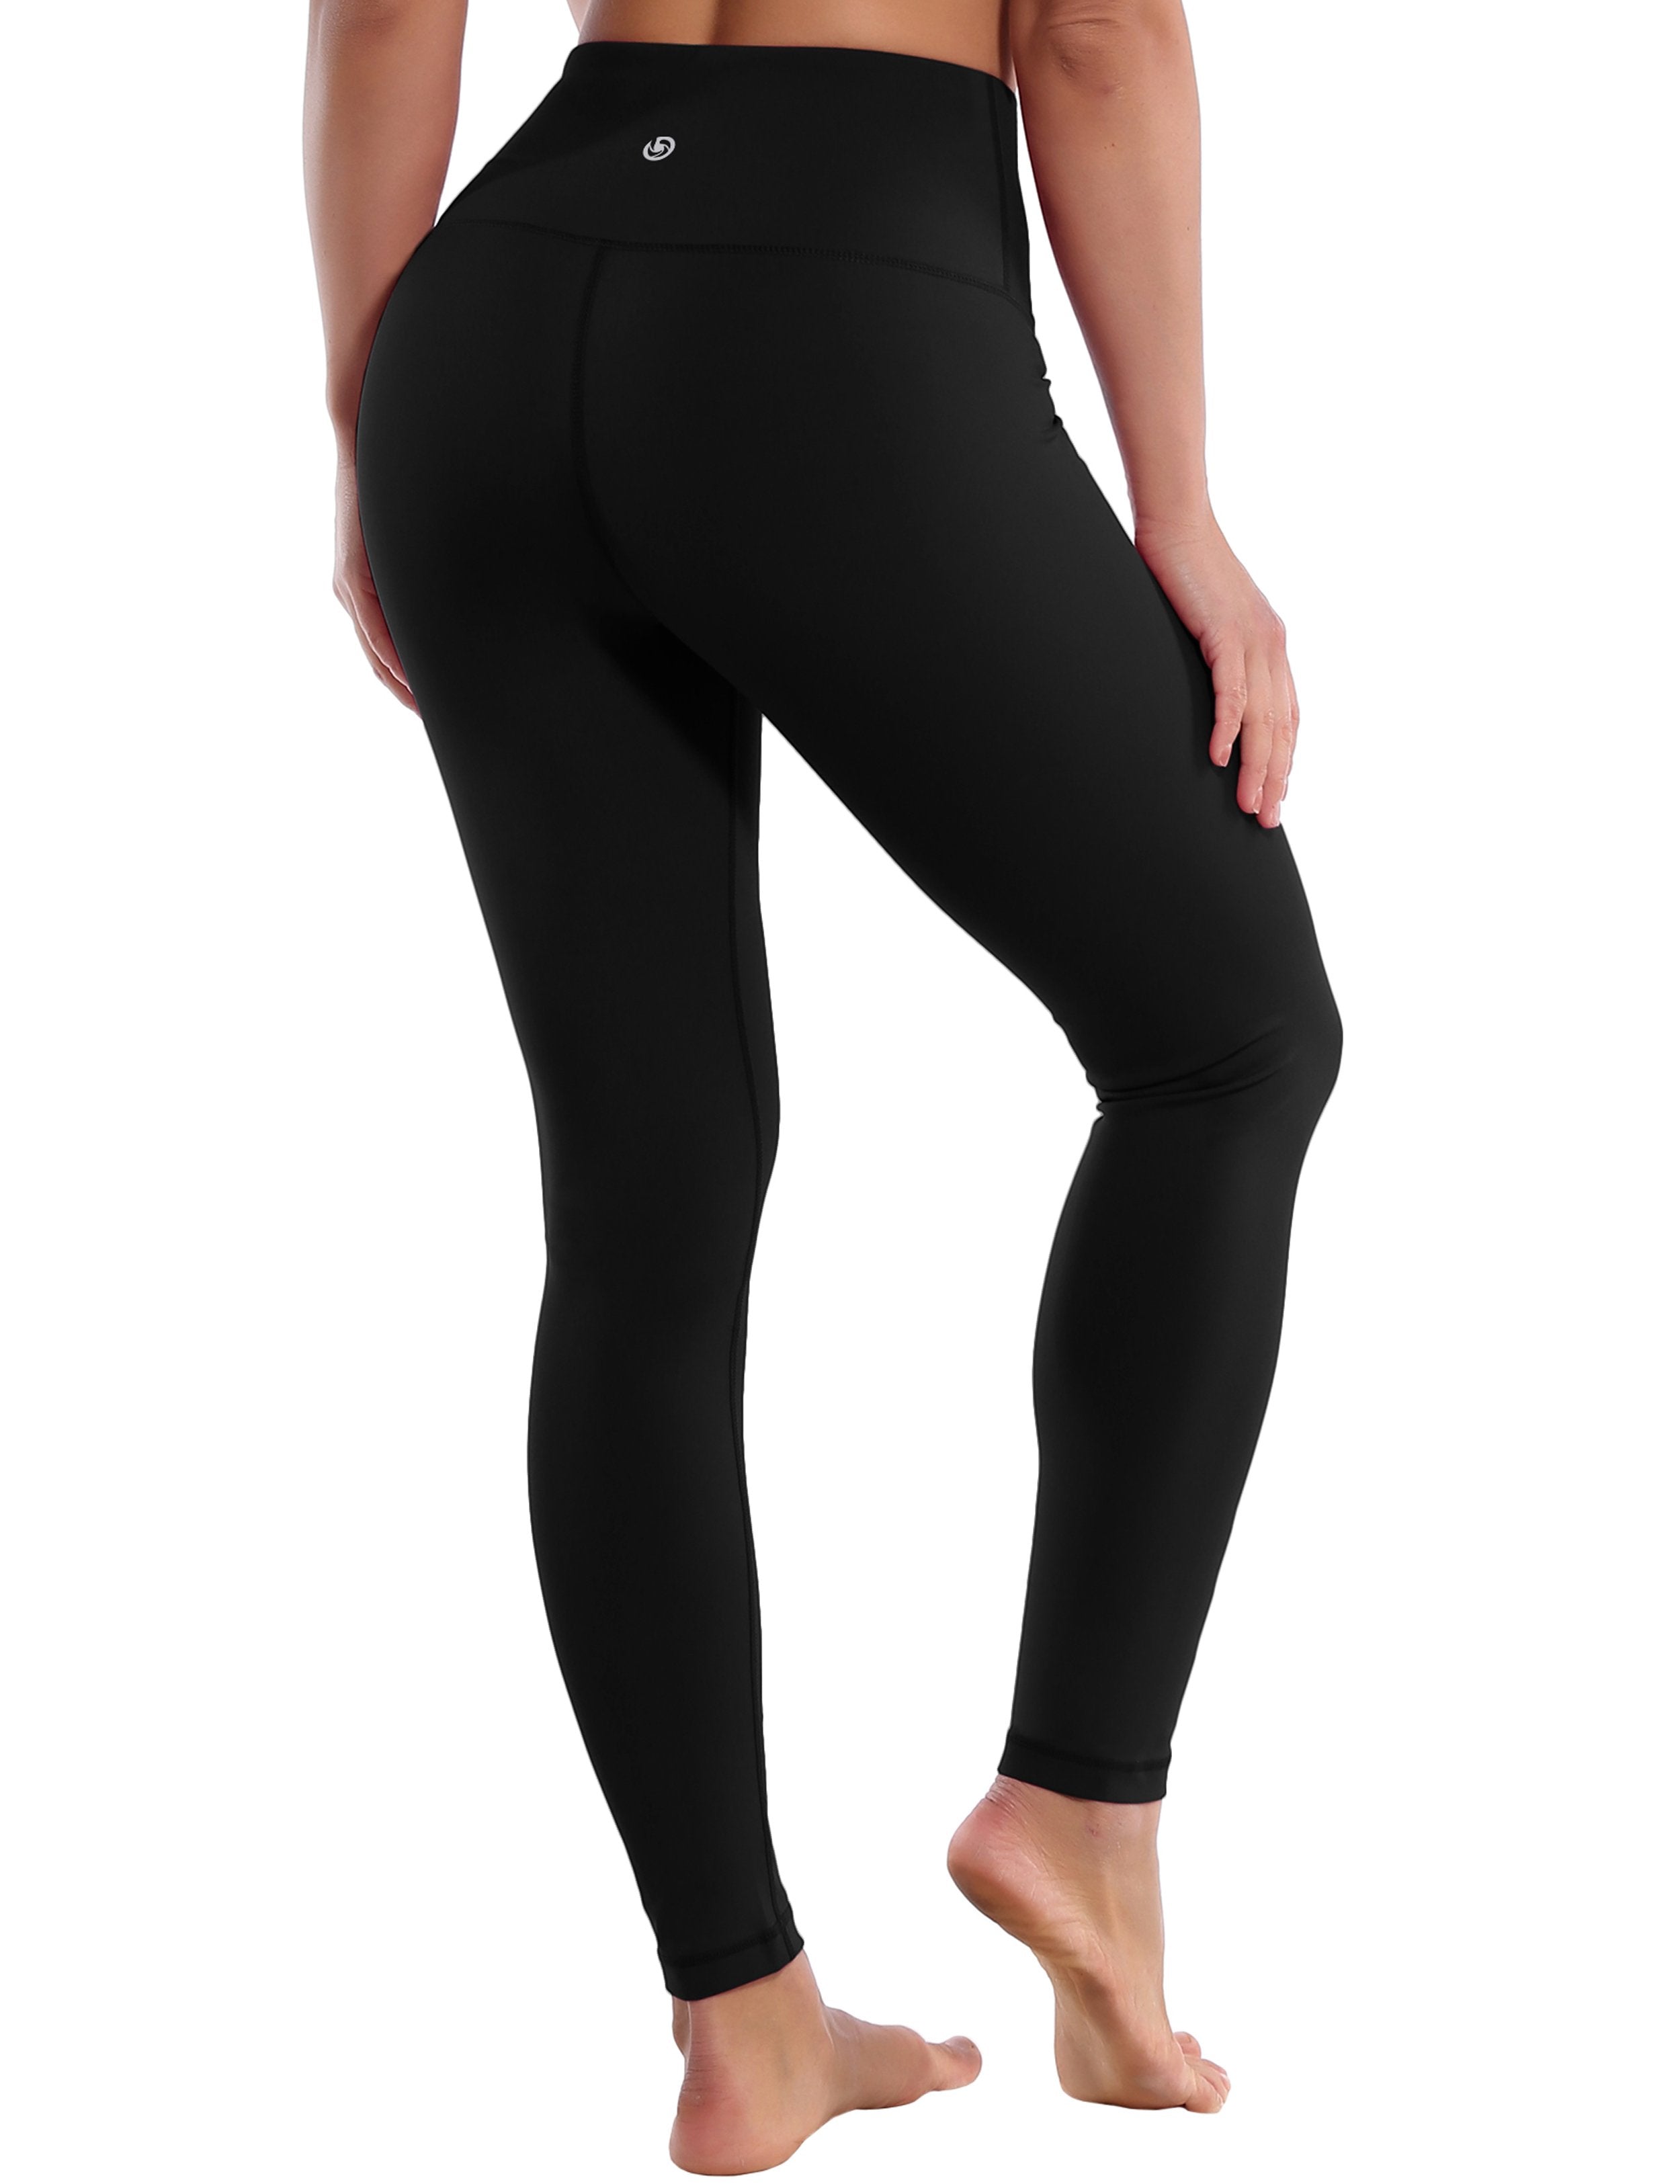 Baihetu High Waist Yoga Pants with Inner Pocket Super Soft Leggings for  Women Black Large